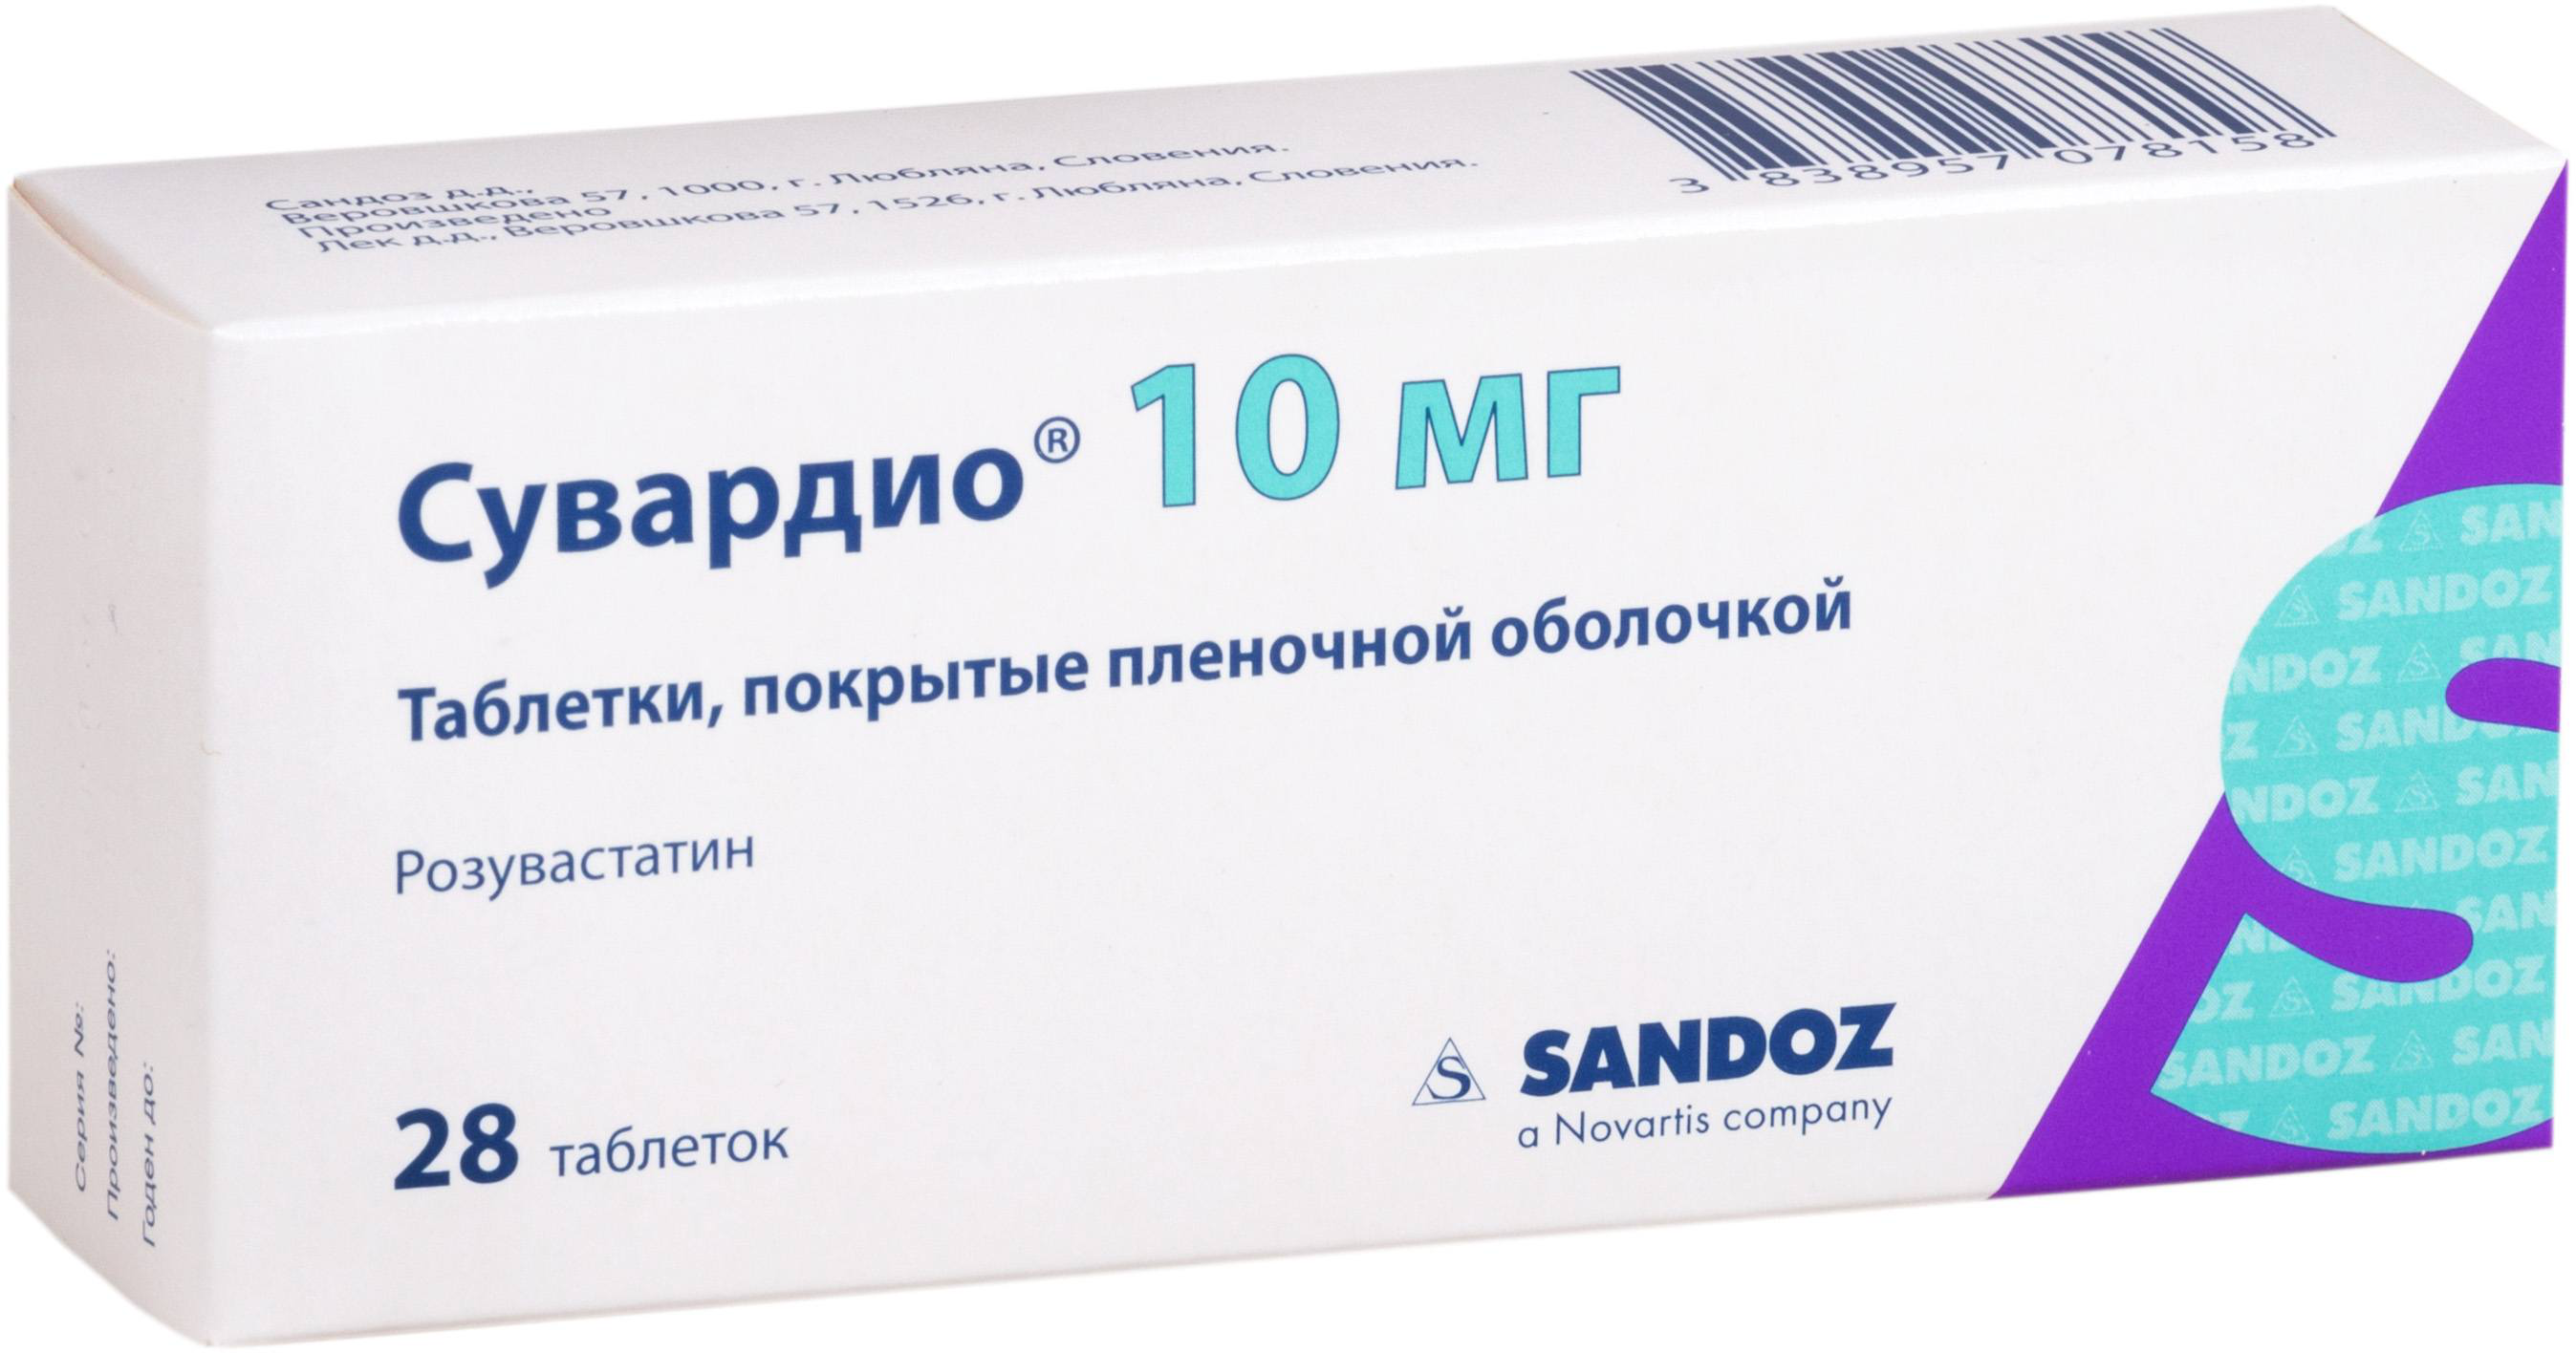 Сувардио таблетки покрытые пленочной оболочкой 10 мг 28 шт.